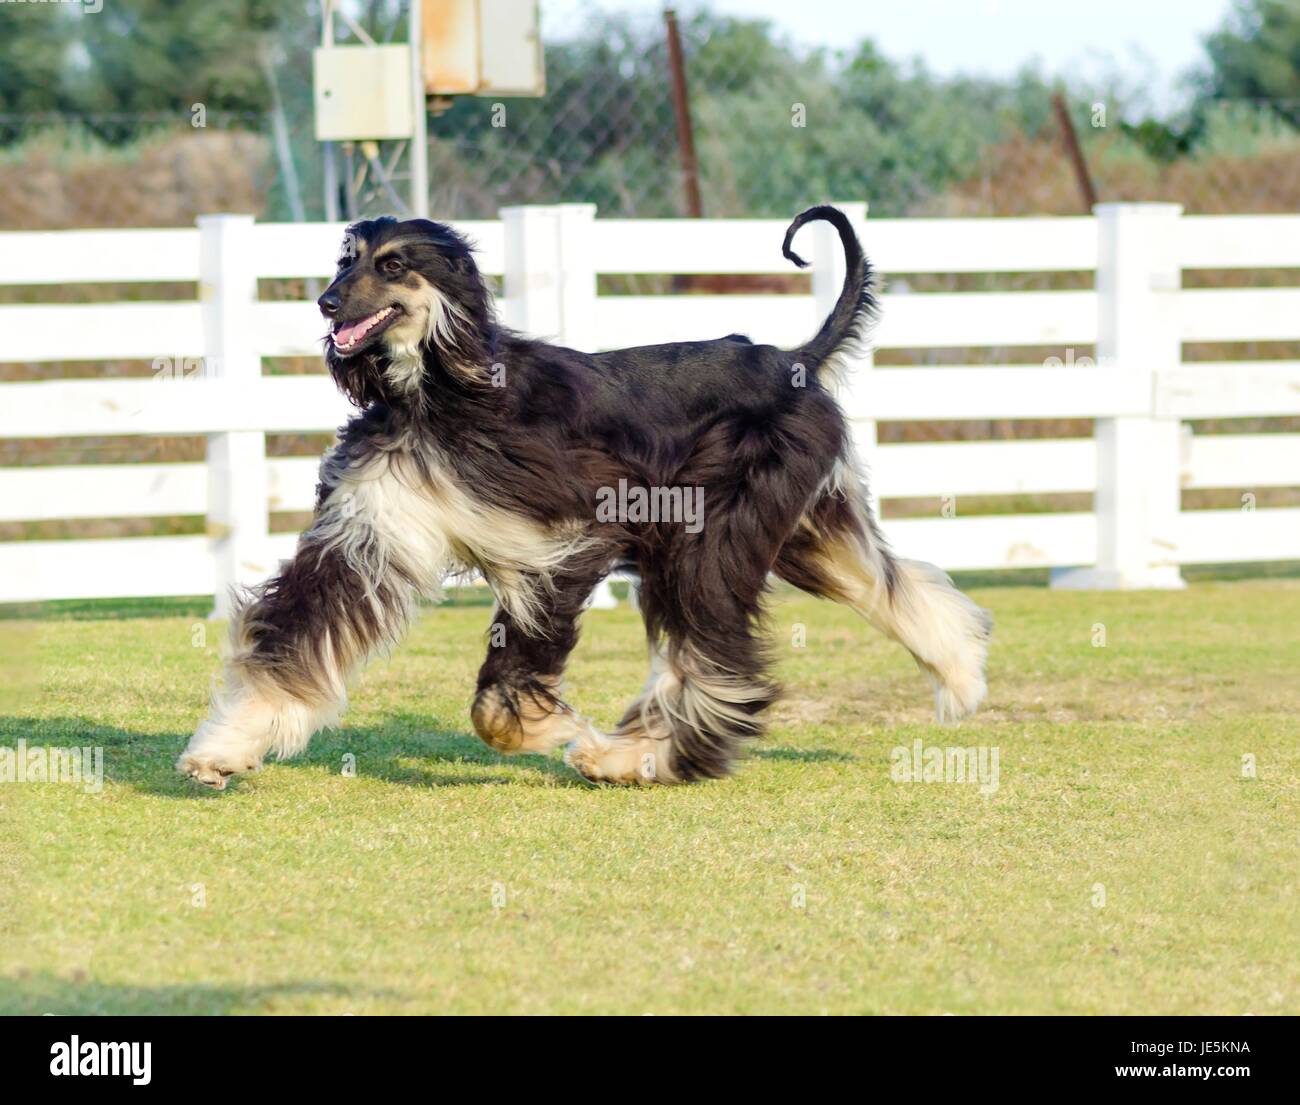 Ein Profil-Blick auf eine gesunde schöne Grizzle, Black And Tan, Afghanischer Windhund läuft auf der Wiese, auf der Suche gut gelaunt und fröhlich. Persische Windhund Hunde sind Rank und schlank mit langen, schmalen Kopf, langen, seidigen Fell und Ringelschwanz. Stockfoto